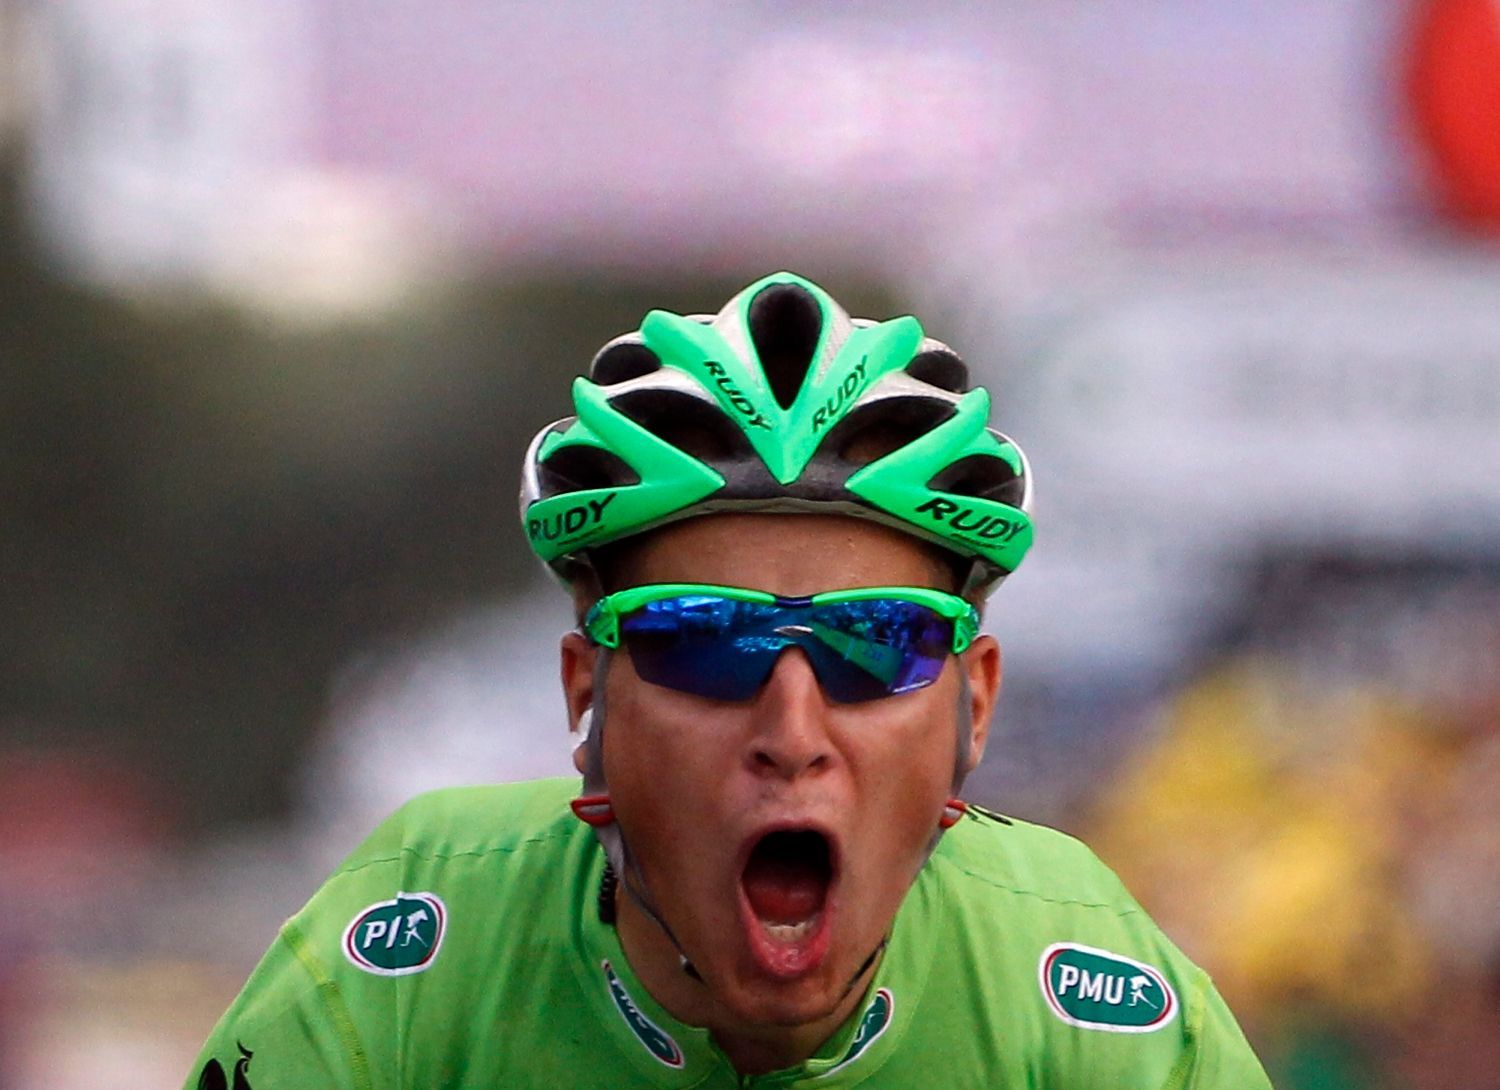 Slovenský cyklista Peter Sagan se raduje z vítězství v šesté etapě Tour de France 2012.